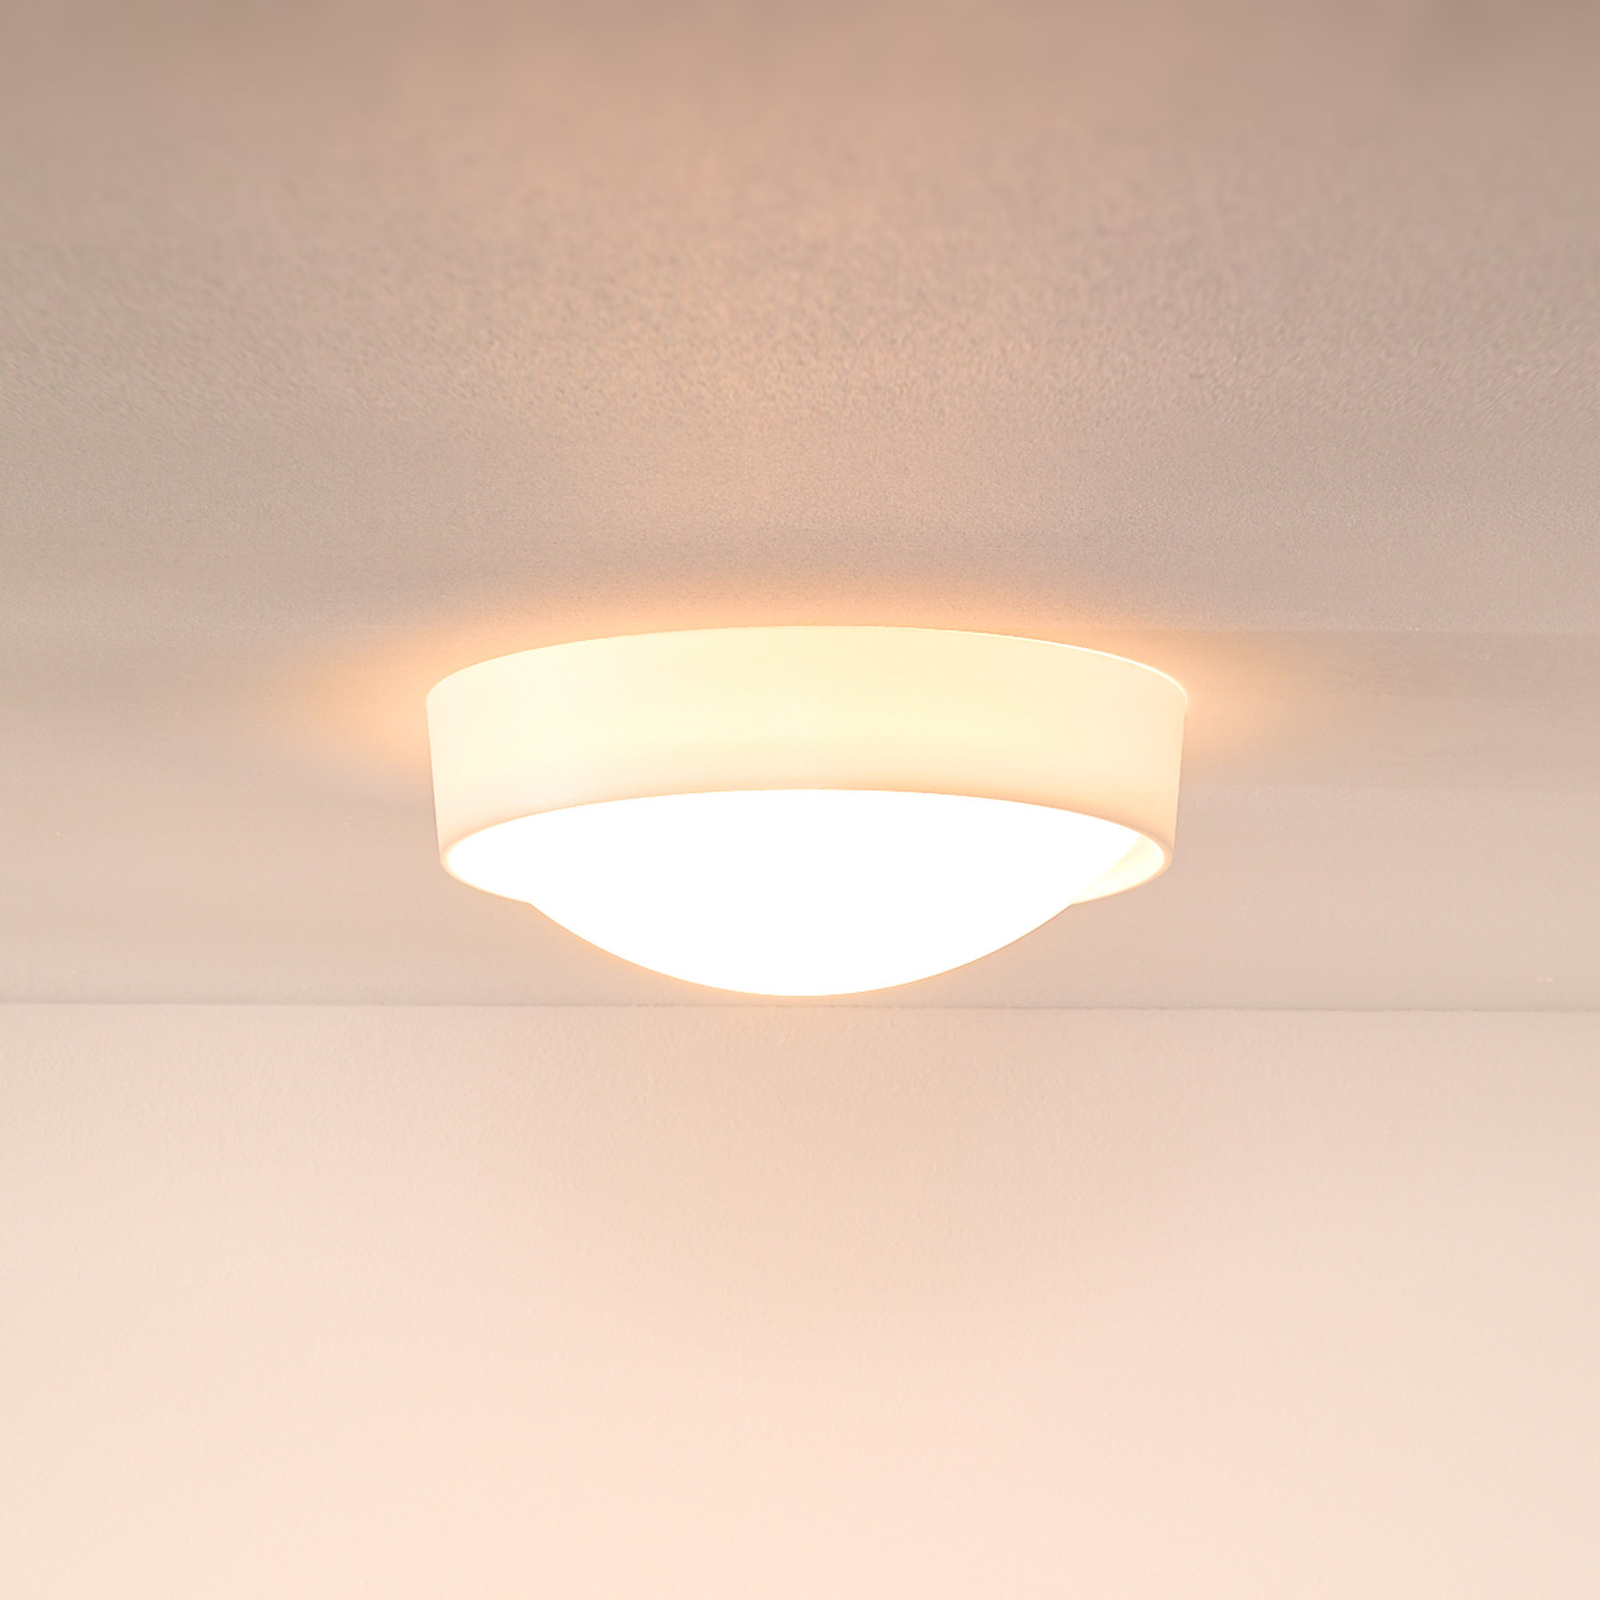 Lampa sufitowa Lex, okrągła, Ø 25 cm, biała